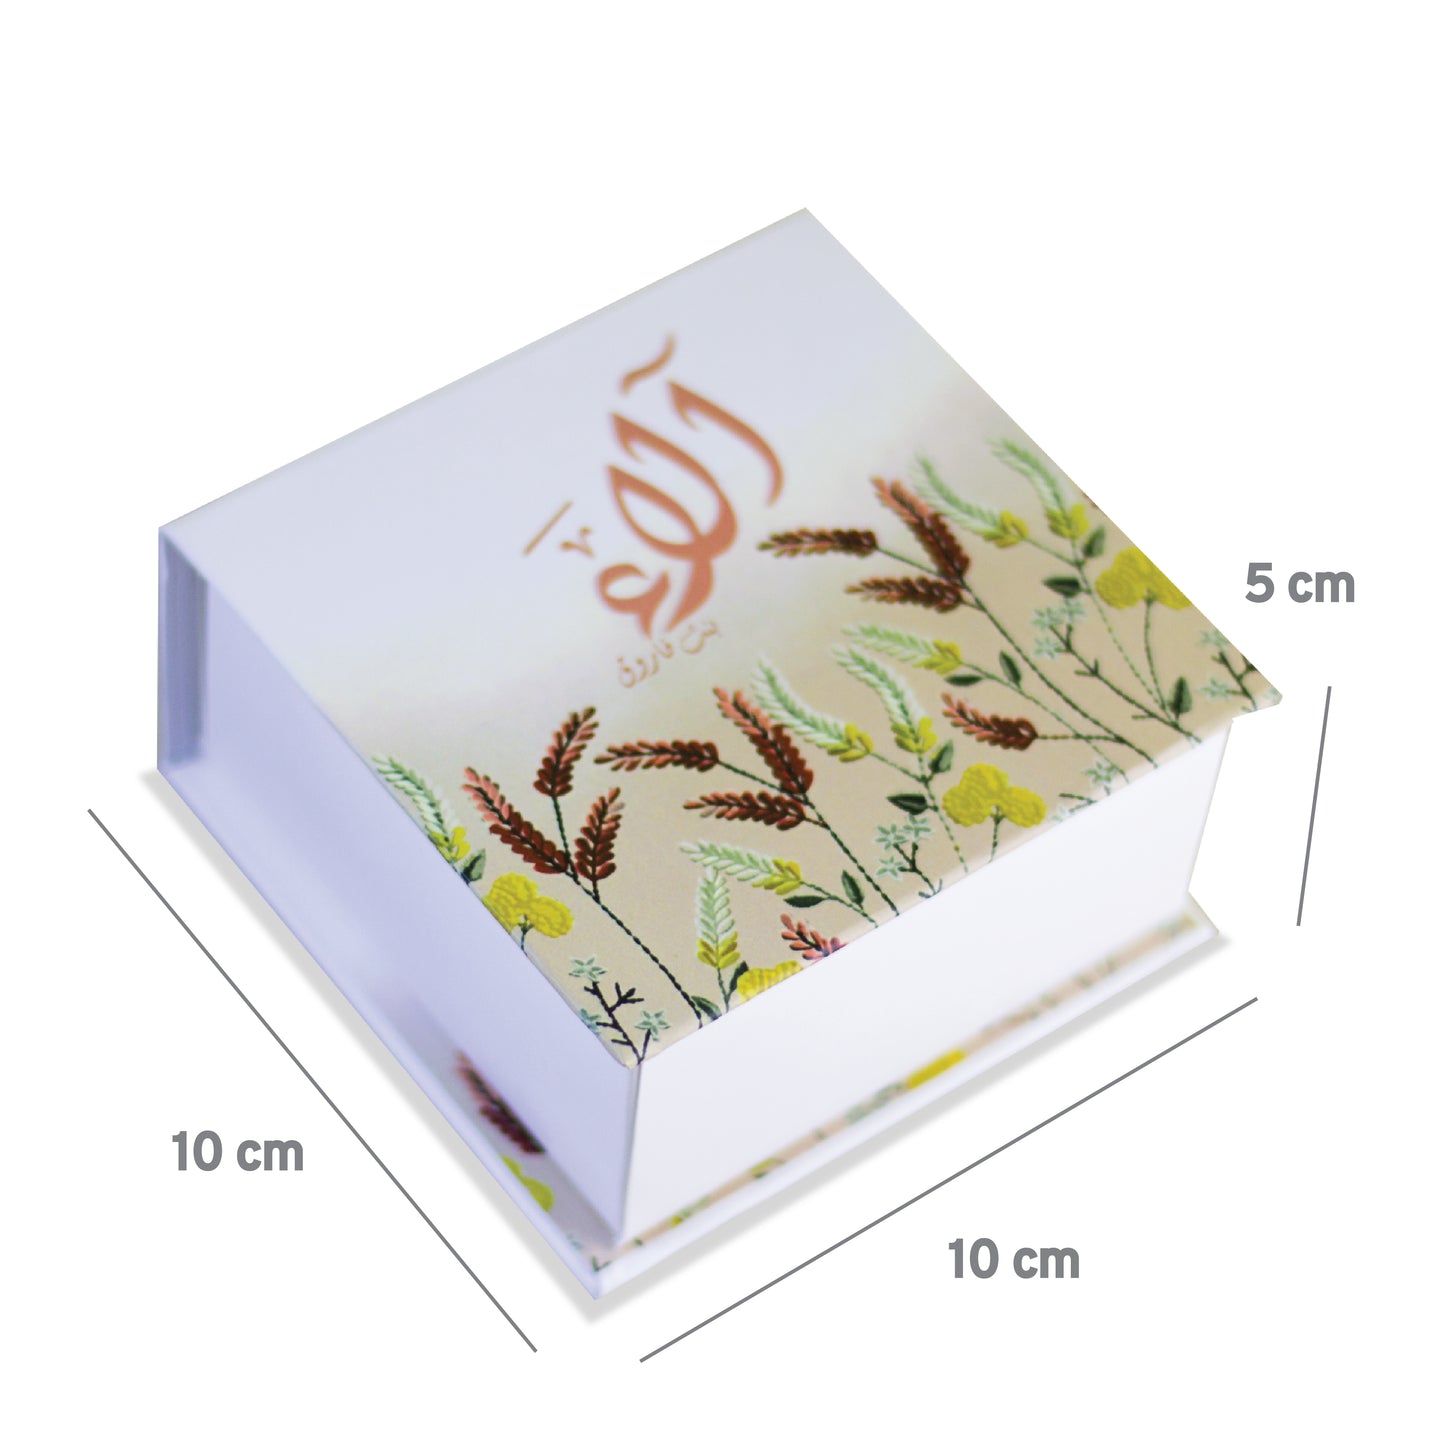 RIGID BOX 10x10x5 cm